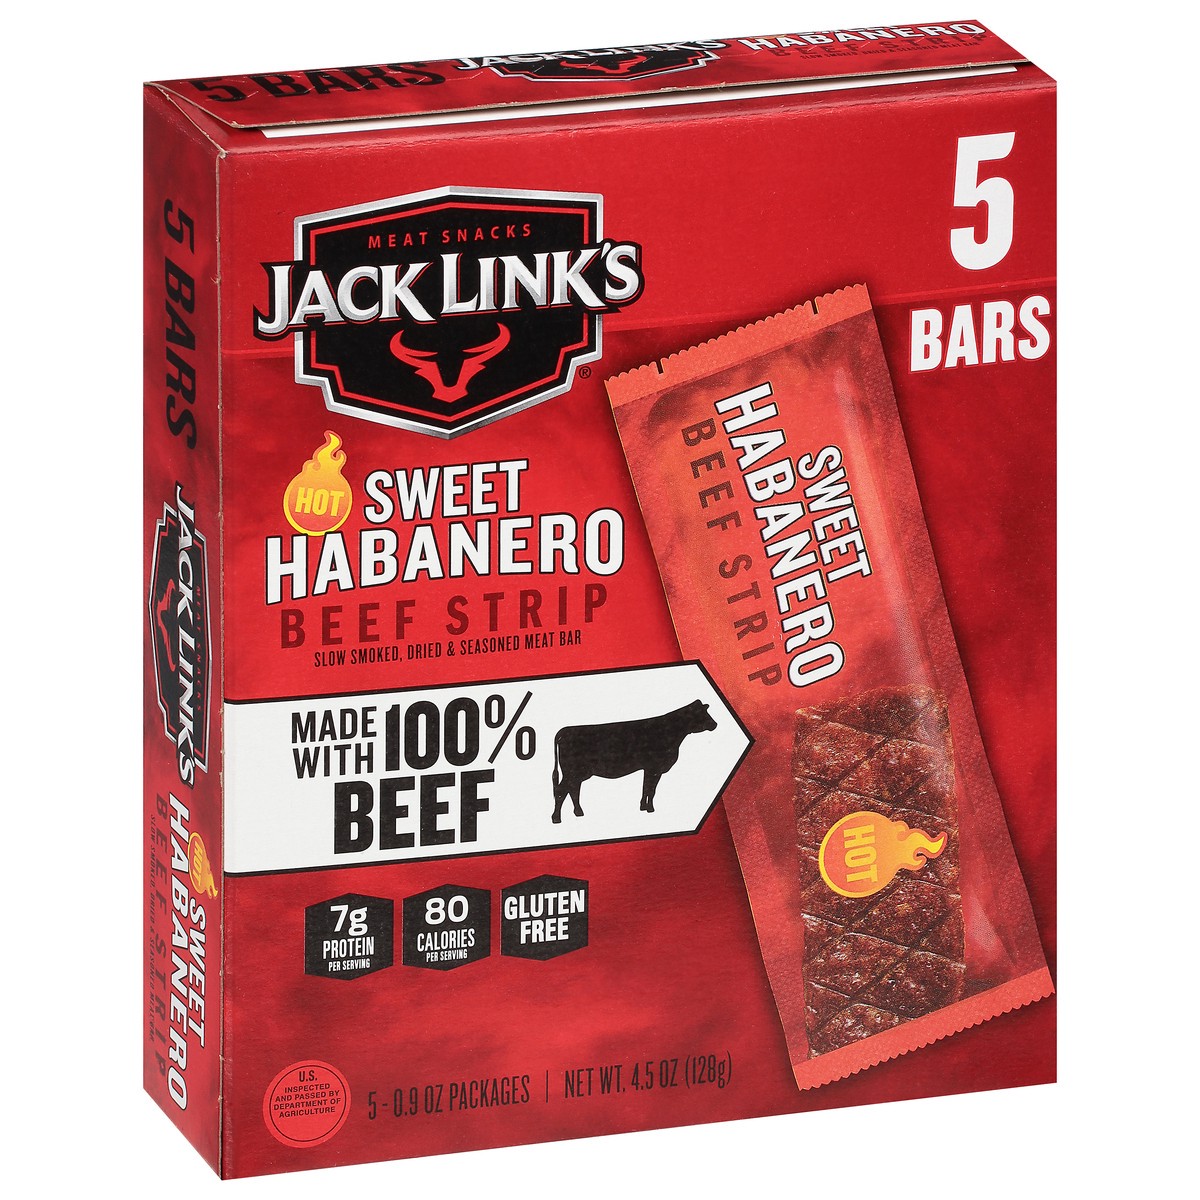 slide 2 of 9, Jack Link's 4.5Oz Jack Link's Sweet Habanero Beef Steak Strip 1/1 Consumer Unit, 4.5 oz